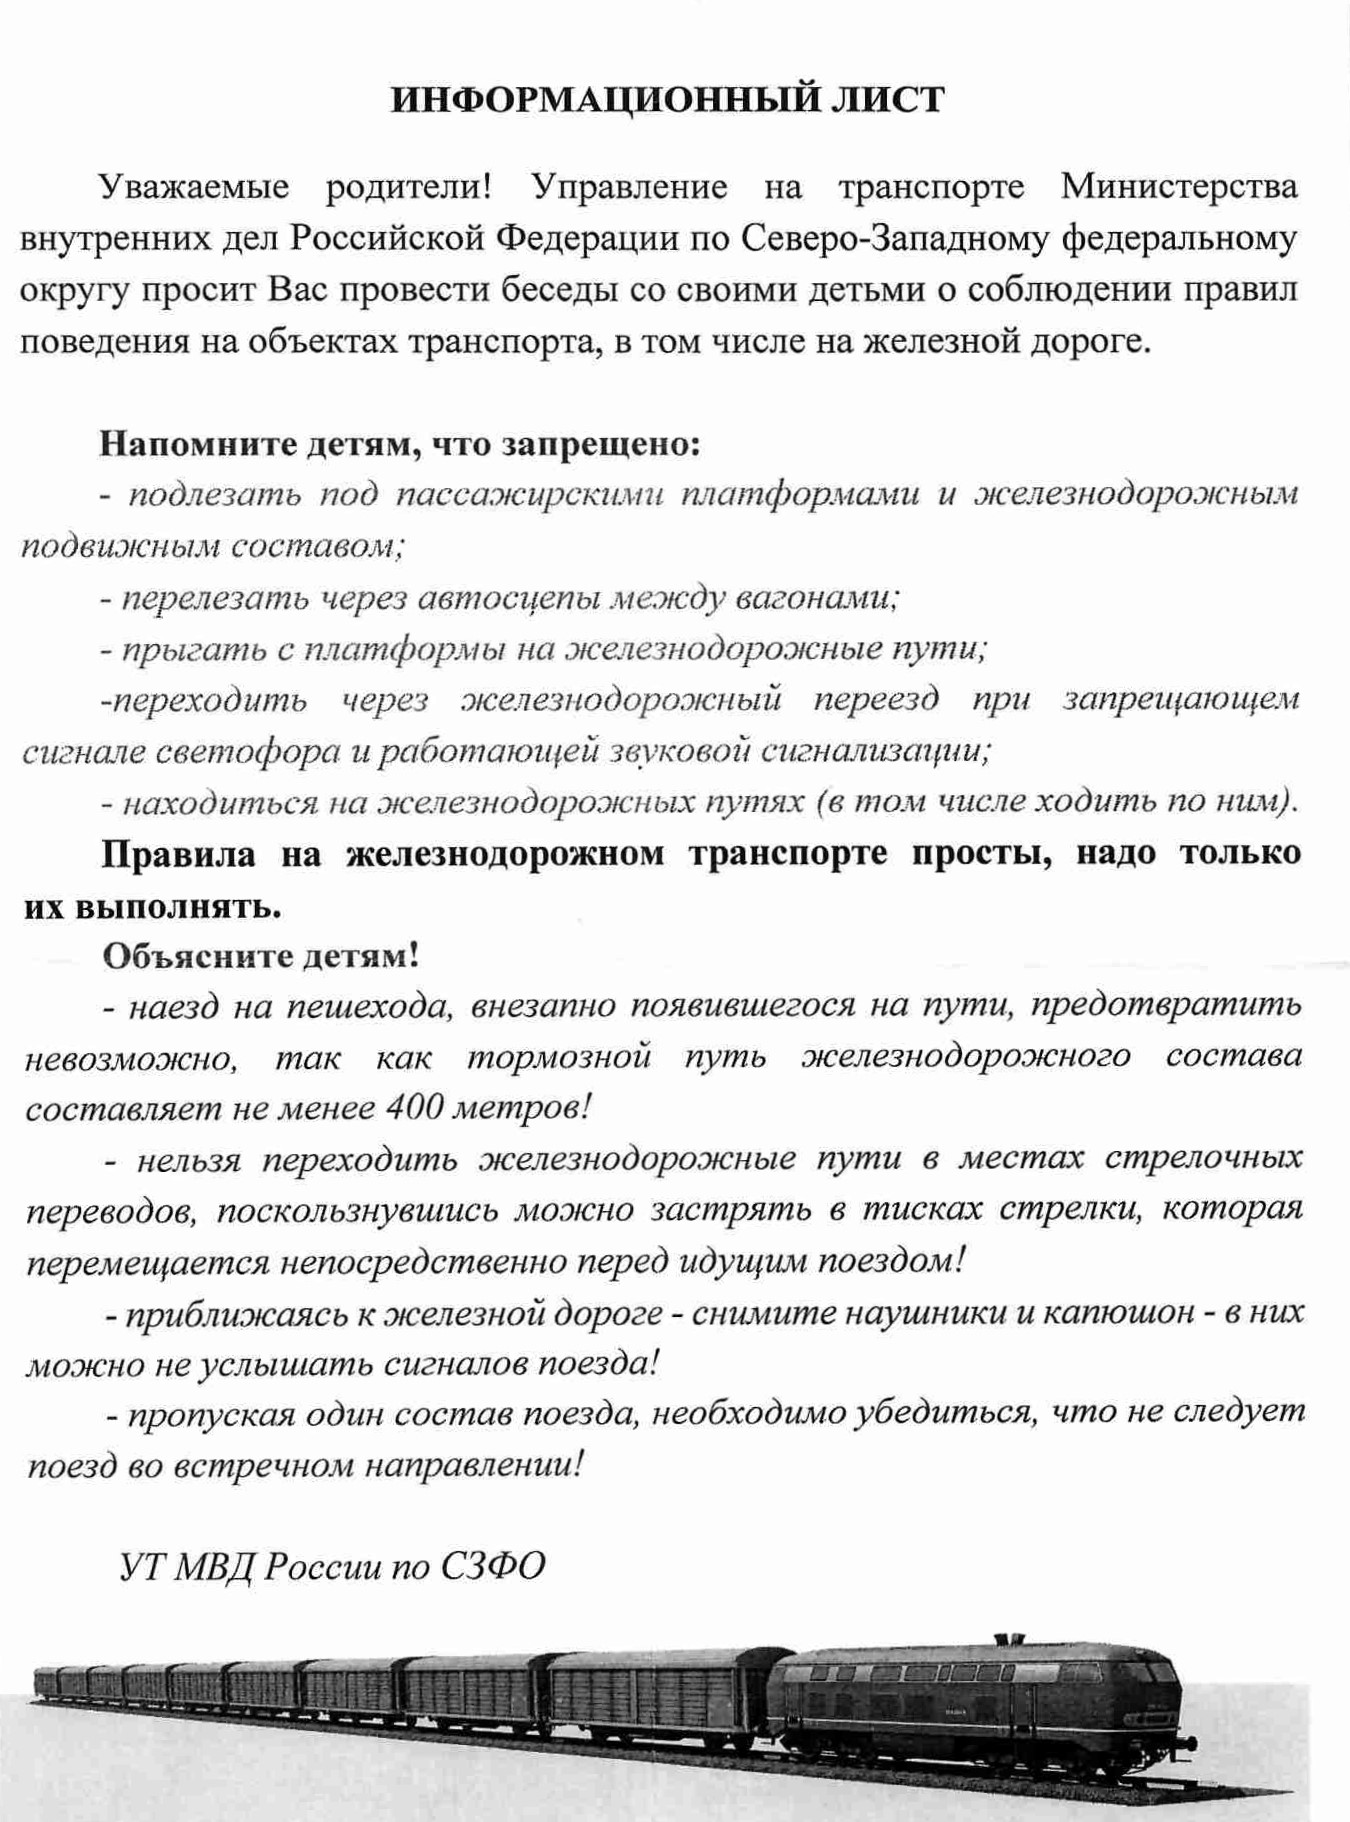 http://kmpt-kirov.ru/downloads/for_parents/info/zhd_1.jpg